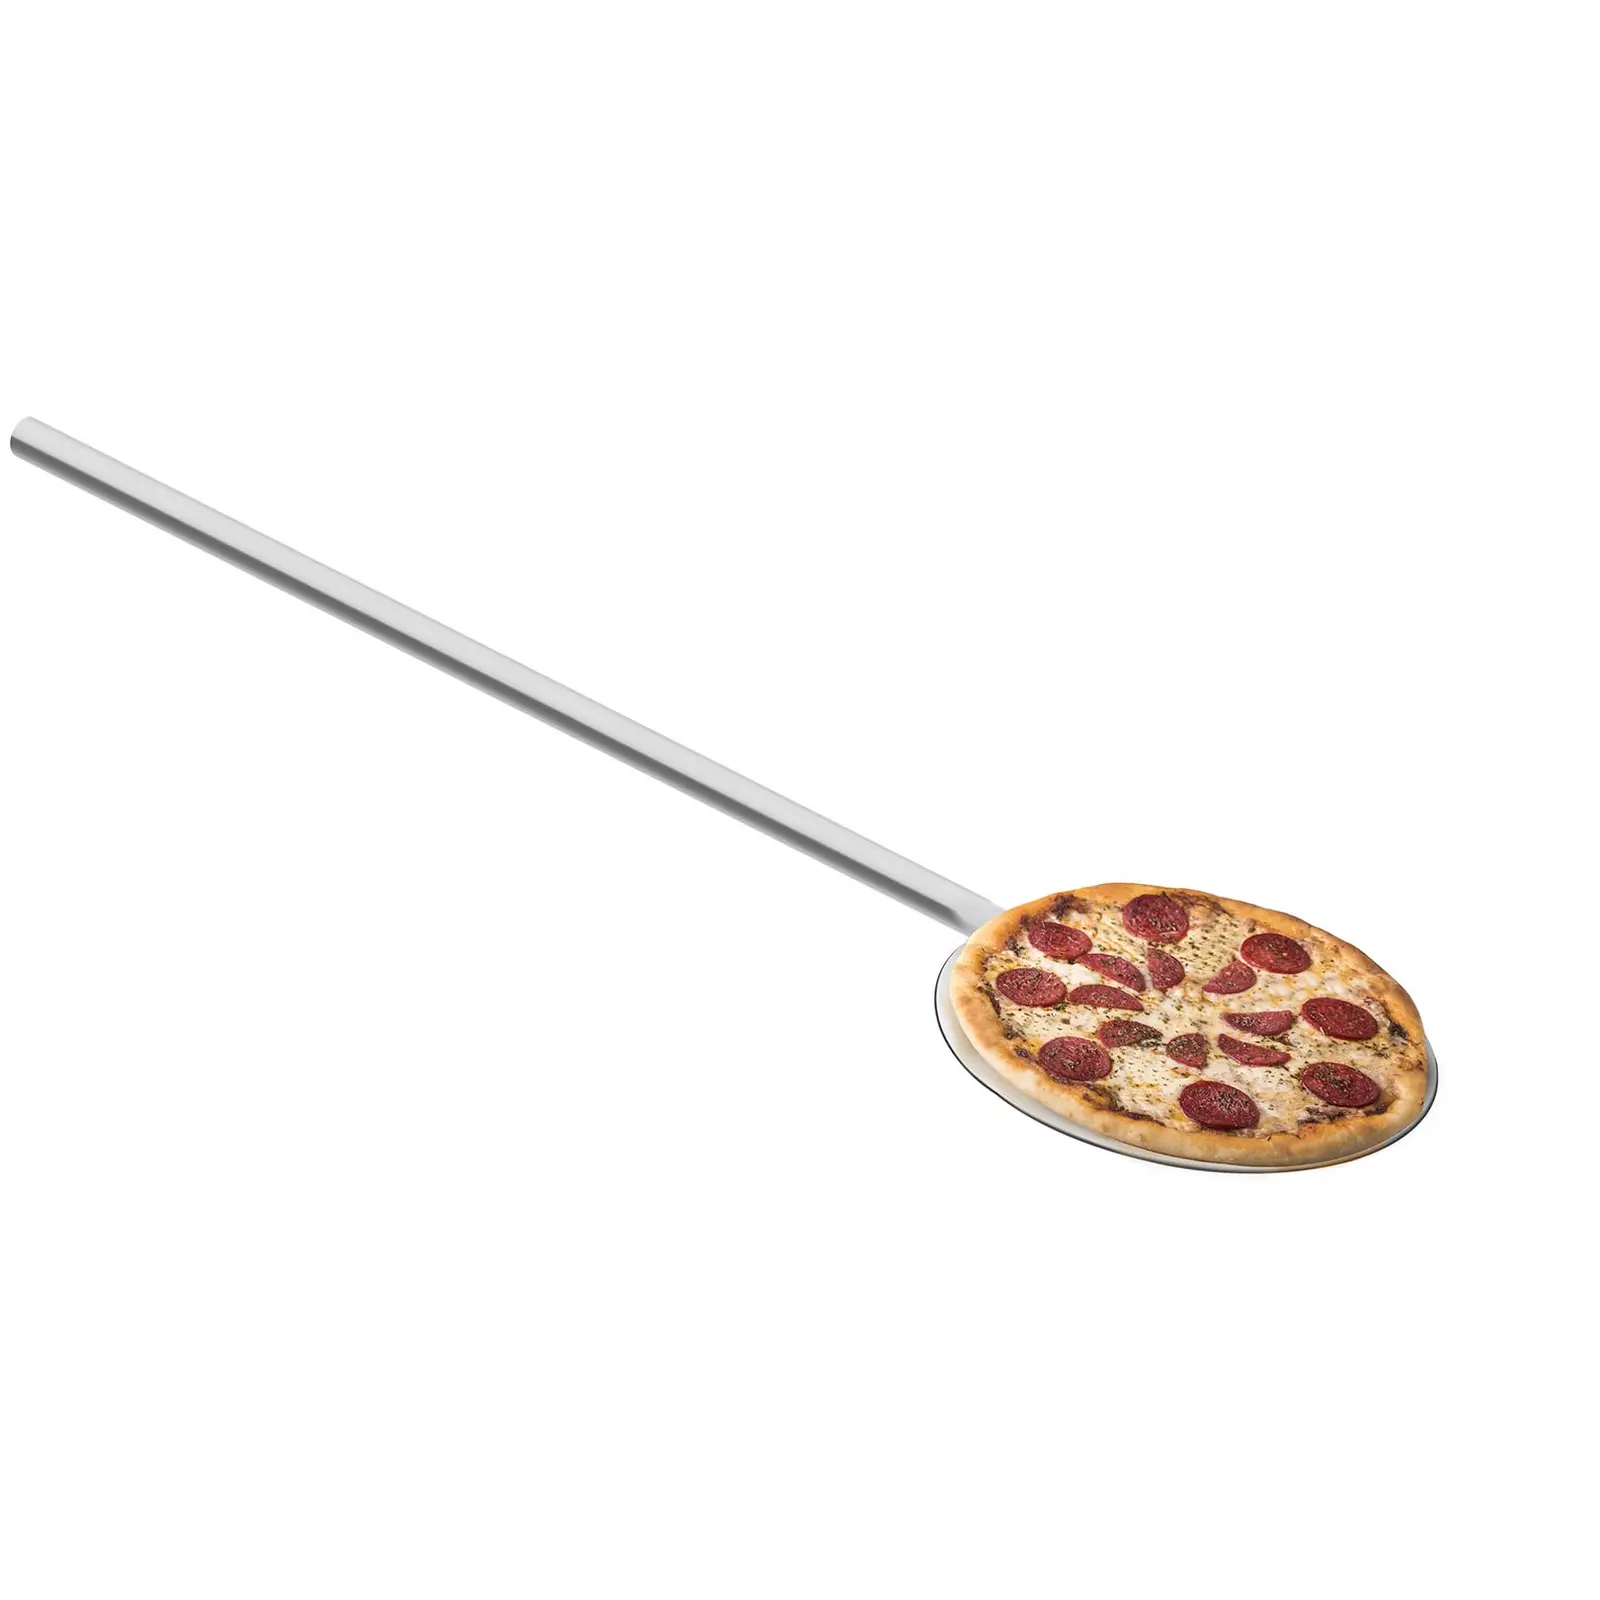 Łopata do pizzy - długość 80 cm - średnica 20 cm